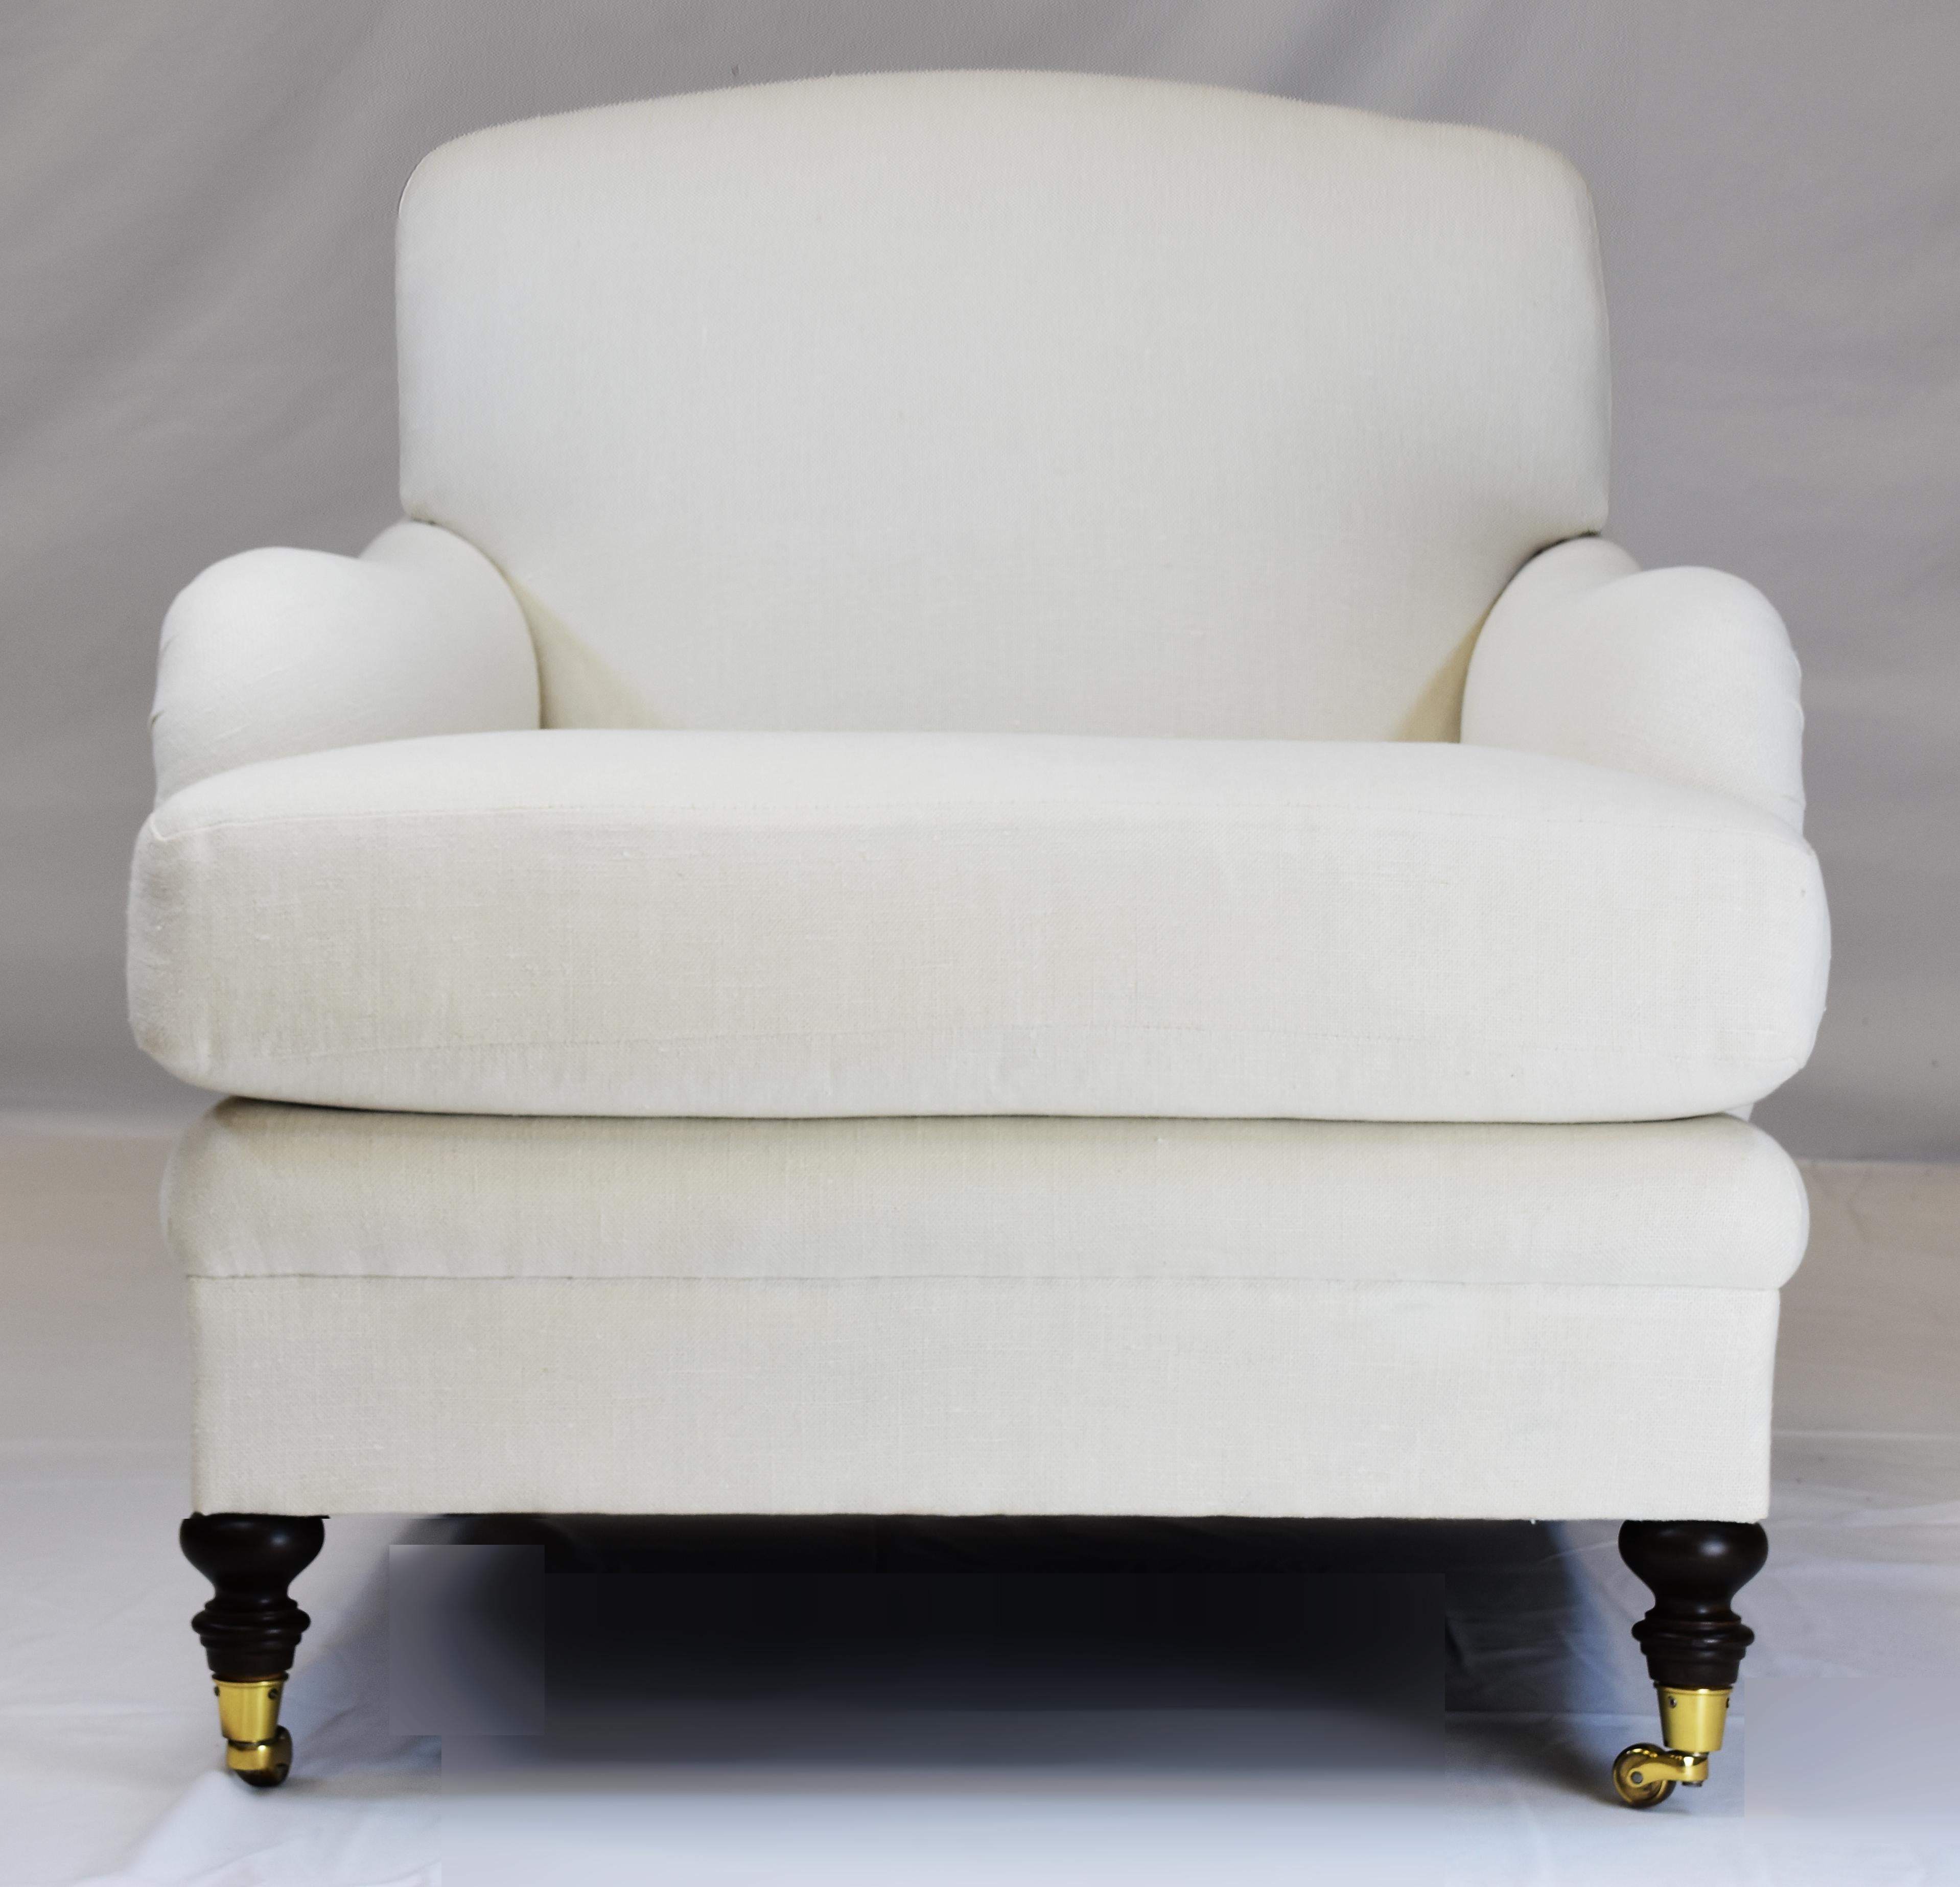 Le Jeune Upholstery Hampton Stuhl Showroom Modell auf Rollen

Zum Verkauf angeboten wird ein off weiß Le Jeune Upholstery englischen Stil HAMPTON C1 .923 Sessel Showroom-Modell. 	Dieser Sessel ist ein mittelgroßer, traditioneller Loungesessel mit